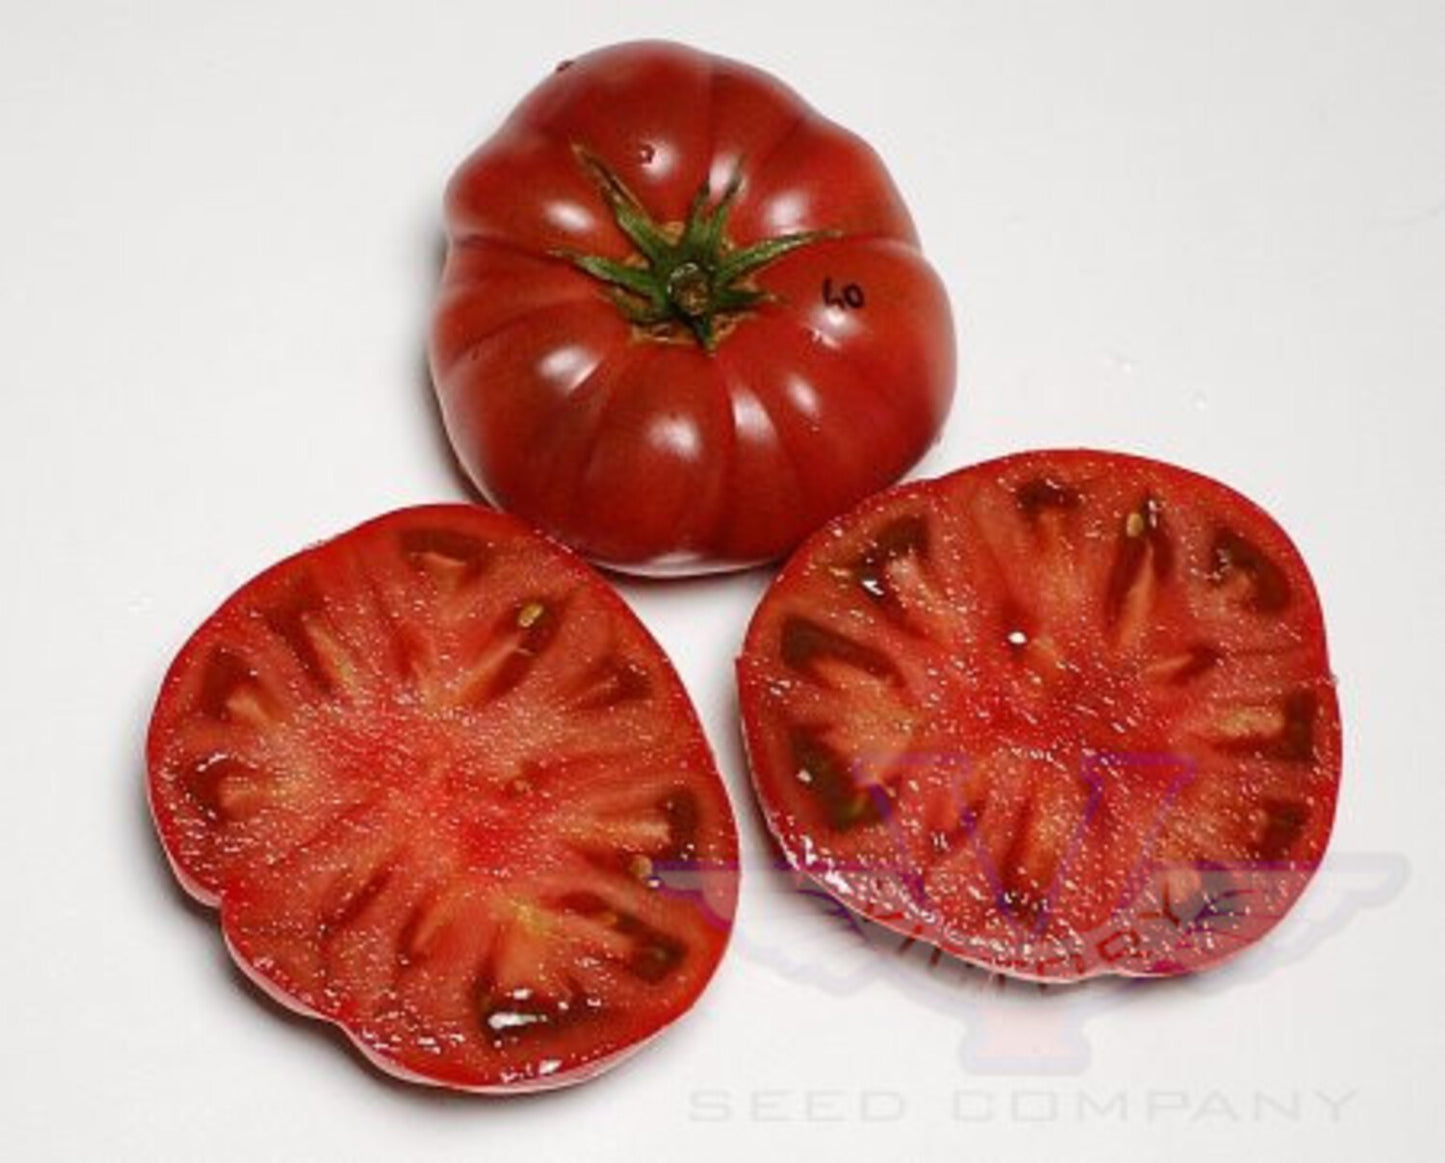 Rosella Purple Tomato